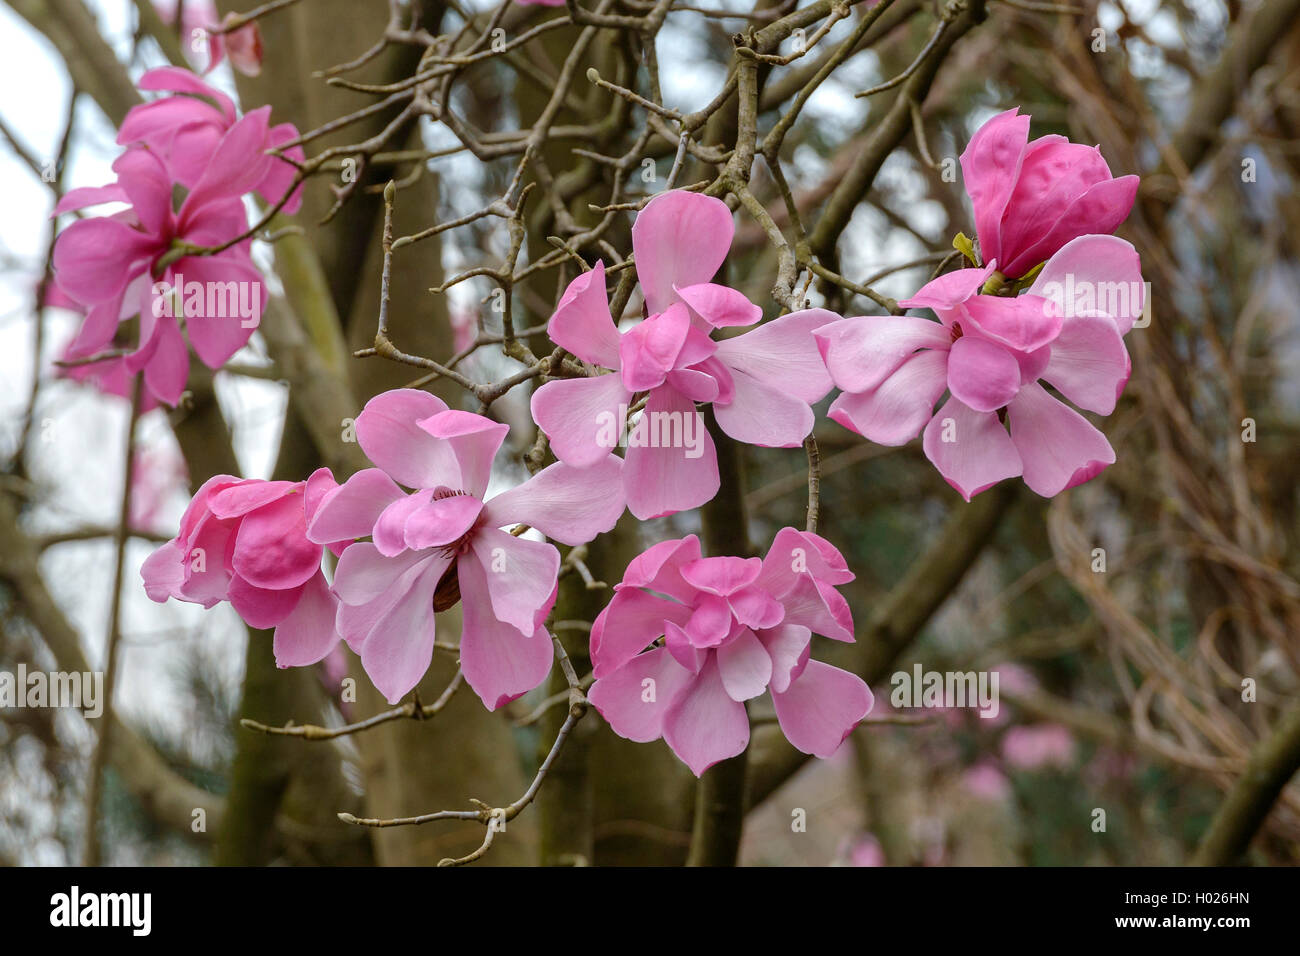 magnolia (Magnolia sprengeri var. diva, Magnolia sprengeri diva), var. diva Stock Photo